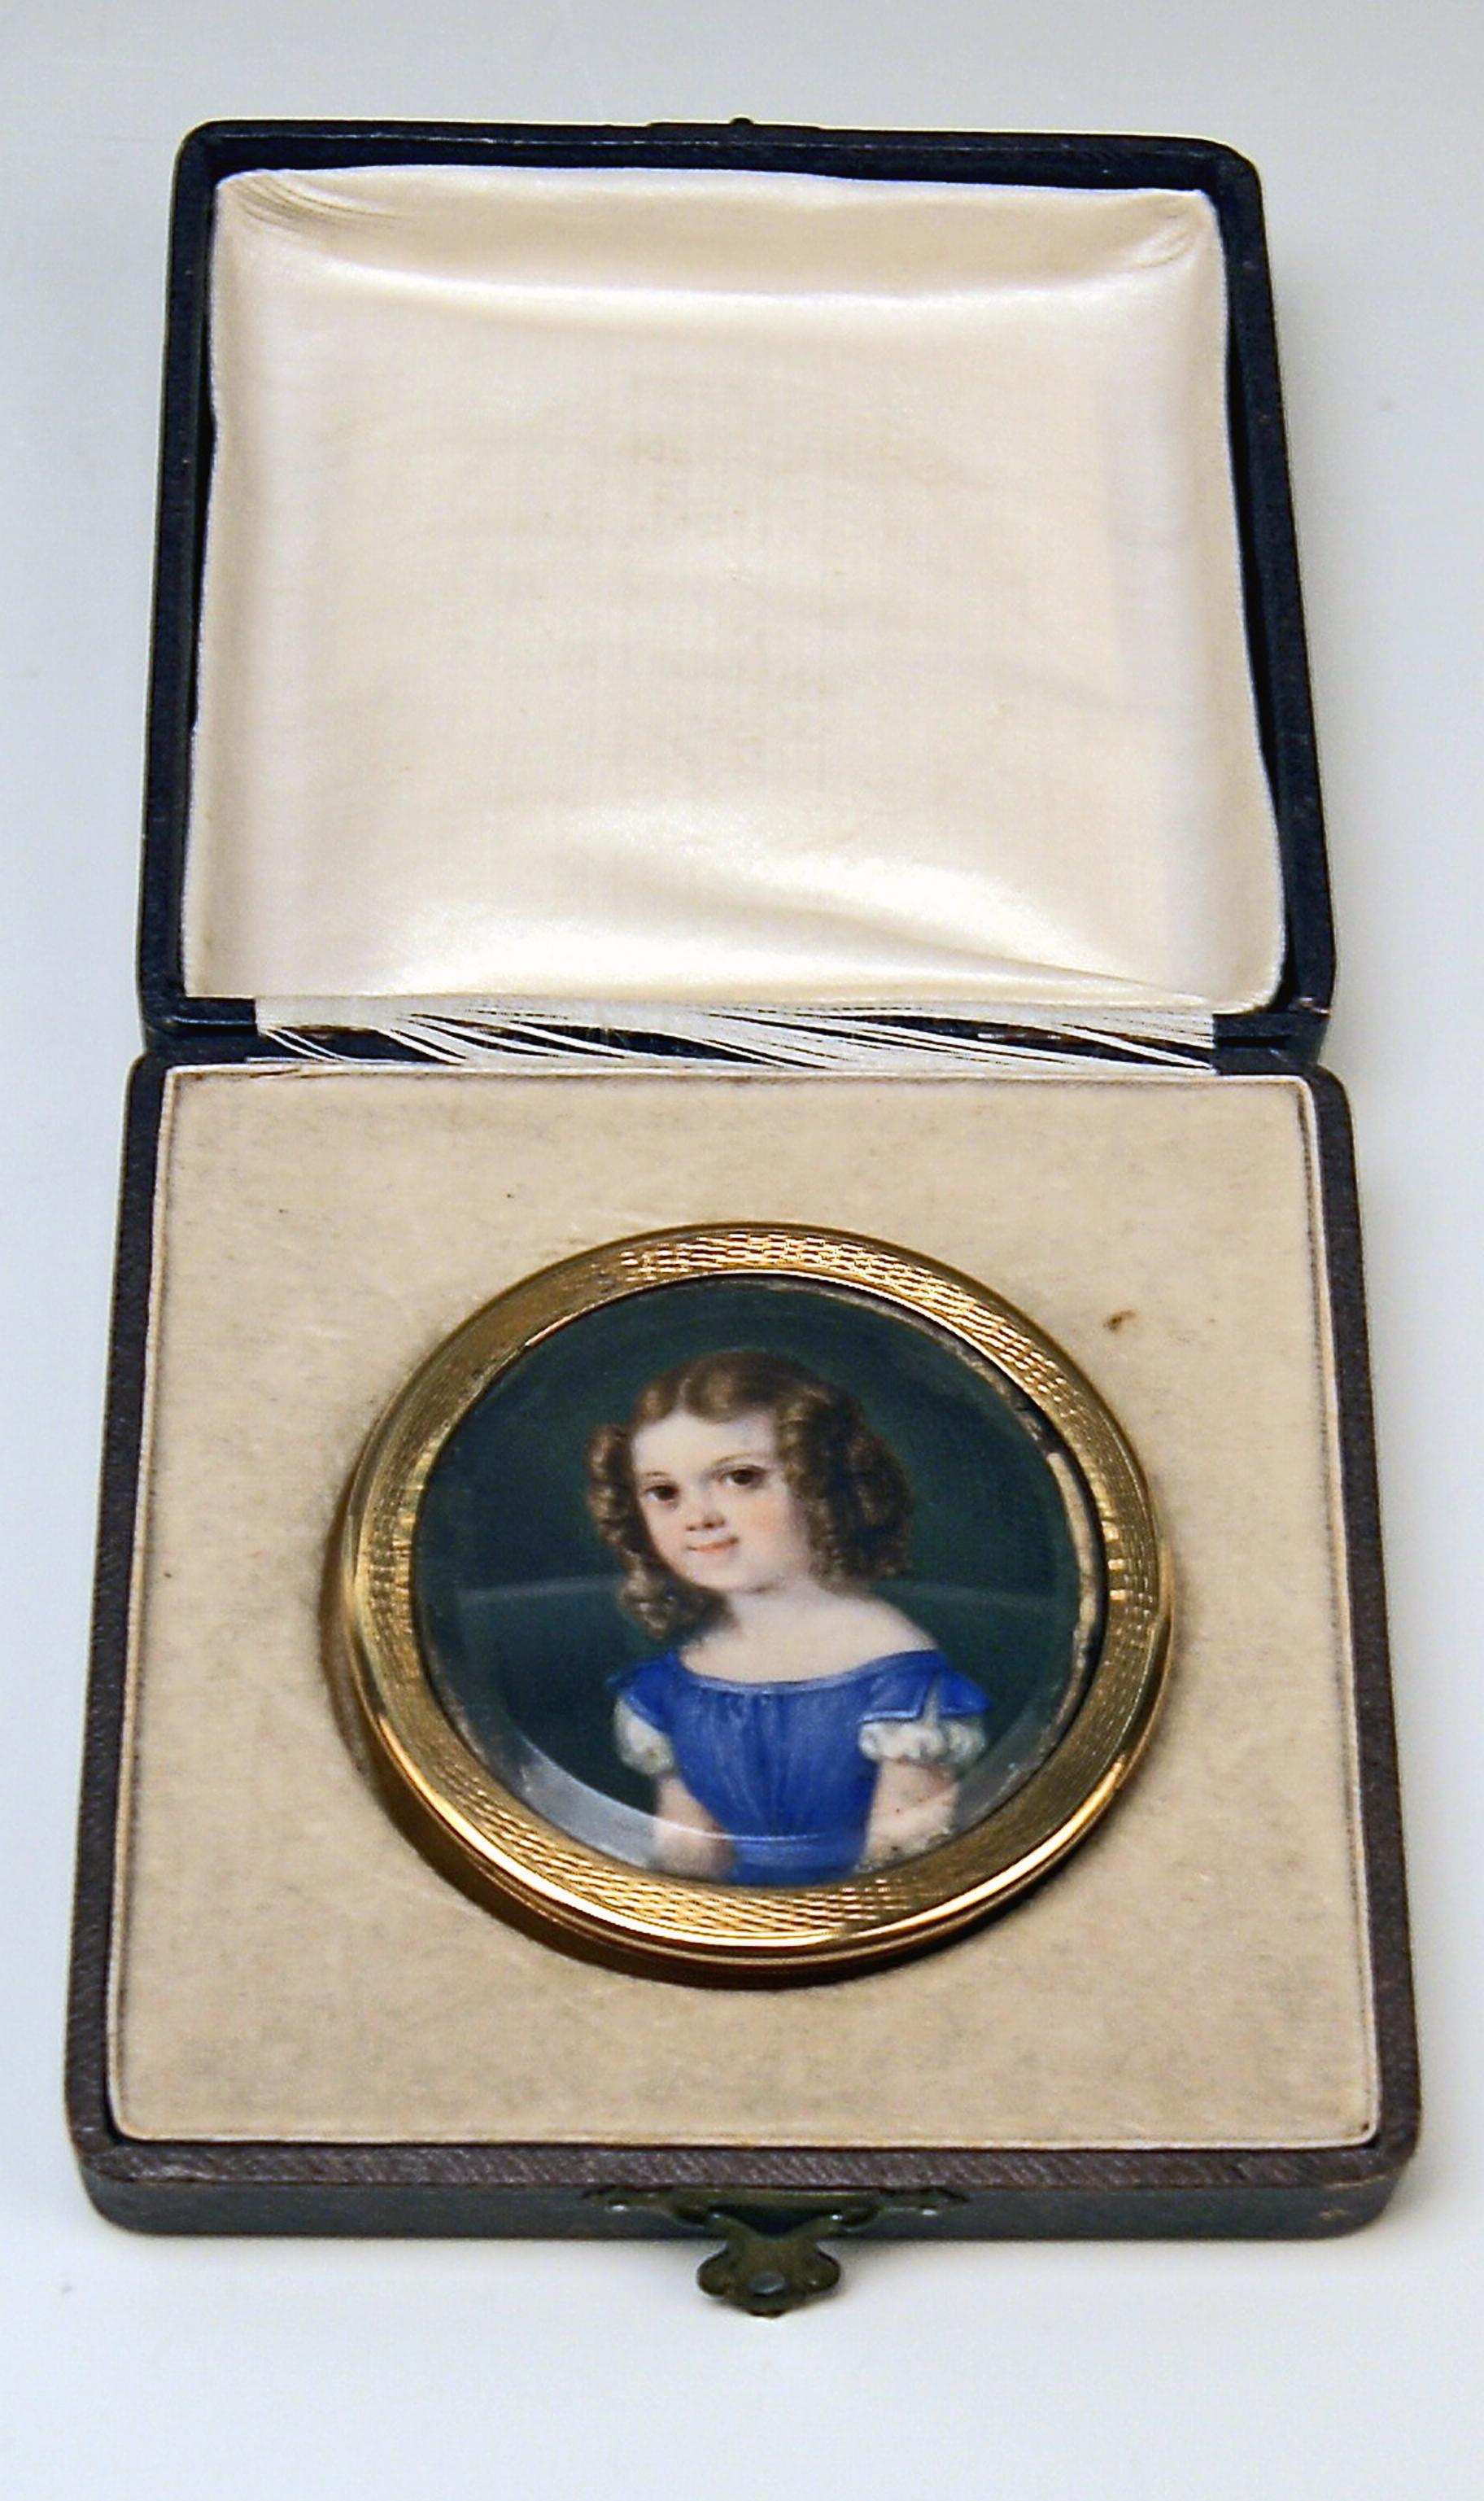 Goldene  biedermeierliche runde Dose mit schönem Portrait eines kleinen Mädchens.
Wien / Österreich, hergestellt 1828

Feinstes Goldstück von bester Fertigungsqualität!

Spezifikationen:
Der Deckel der runden goldenen Dose ist mit einem sehr schönen